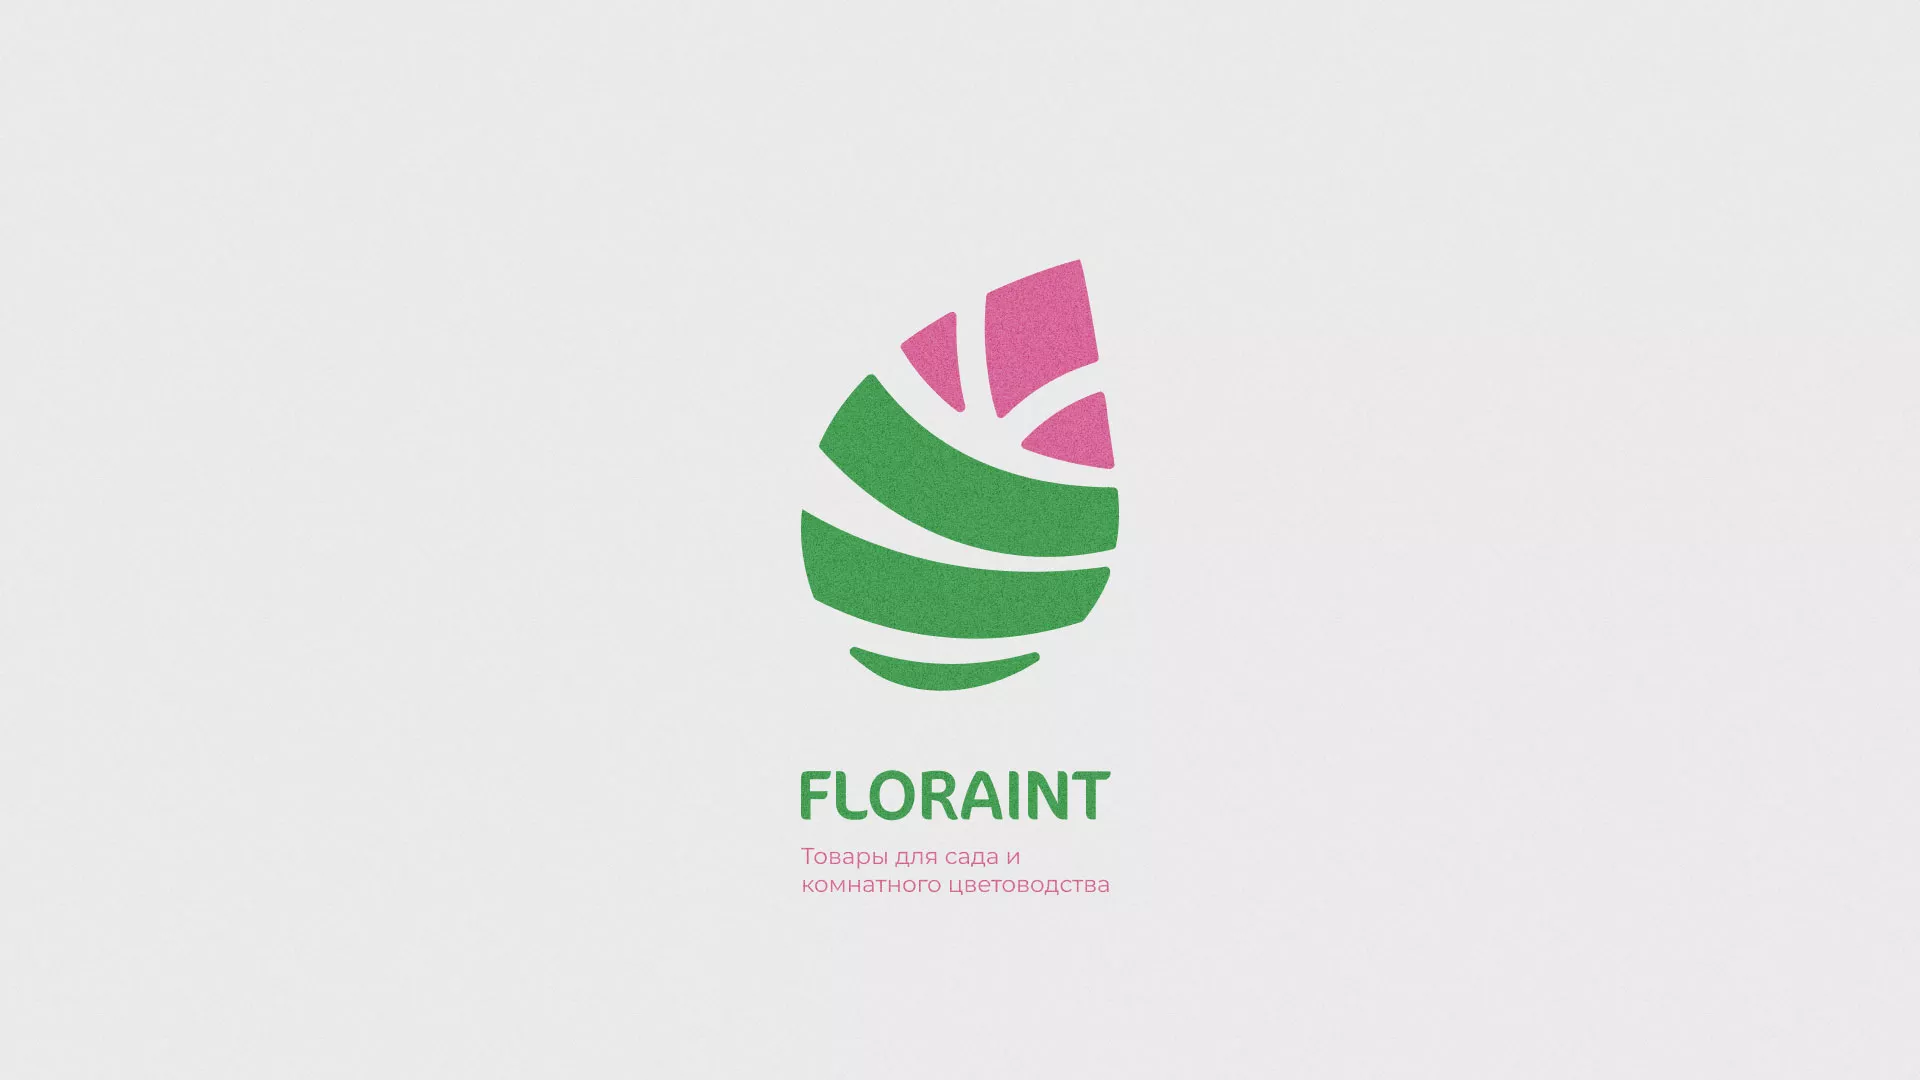 Разработка оформления профиля Instagram для магазина «Floraint» в Вязниках